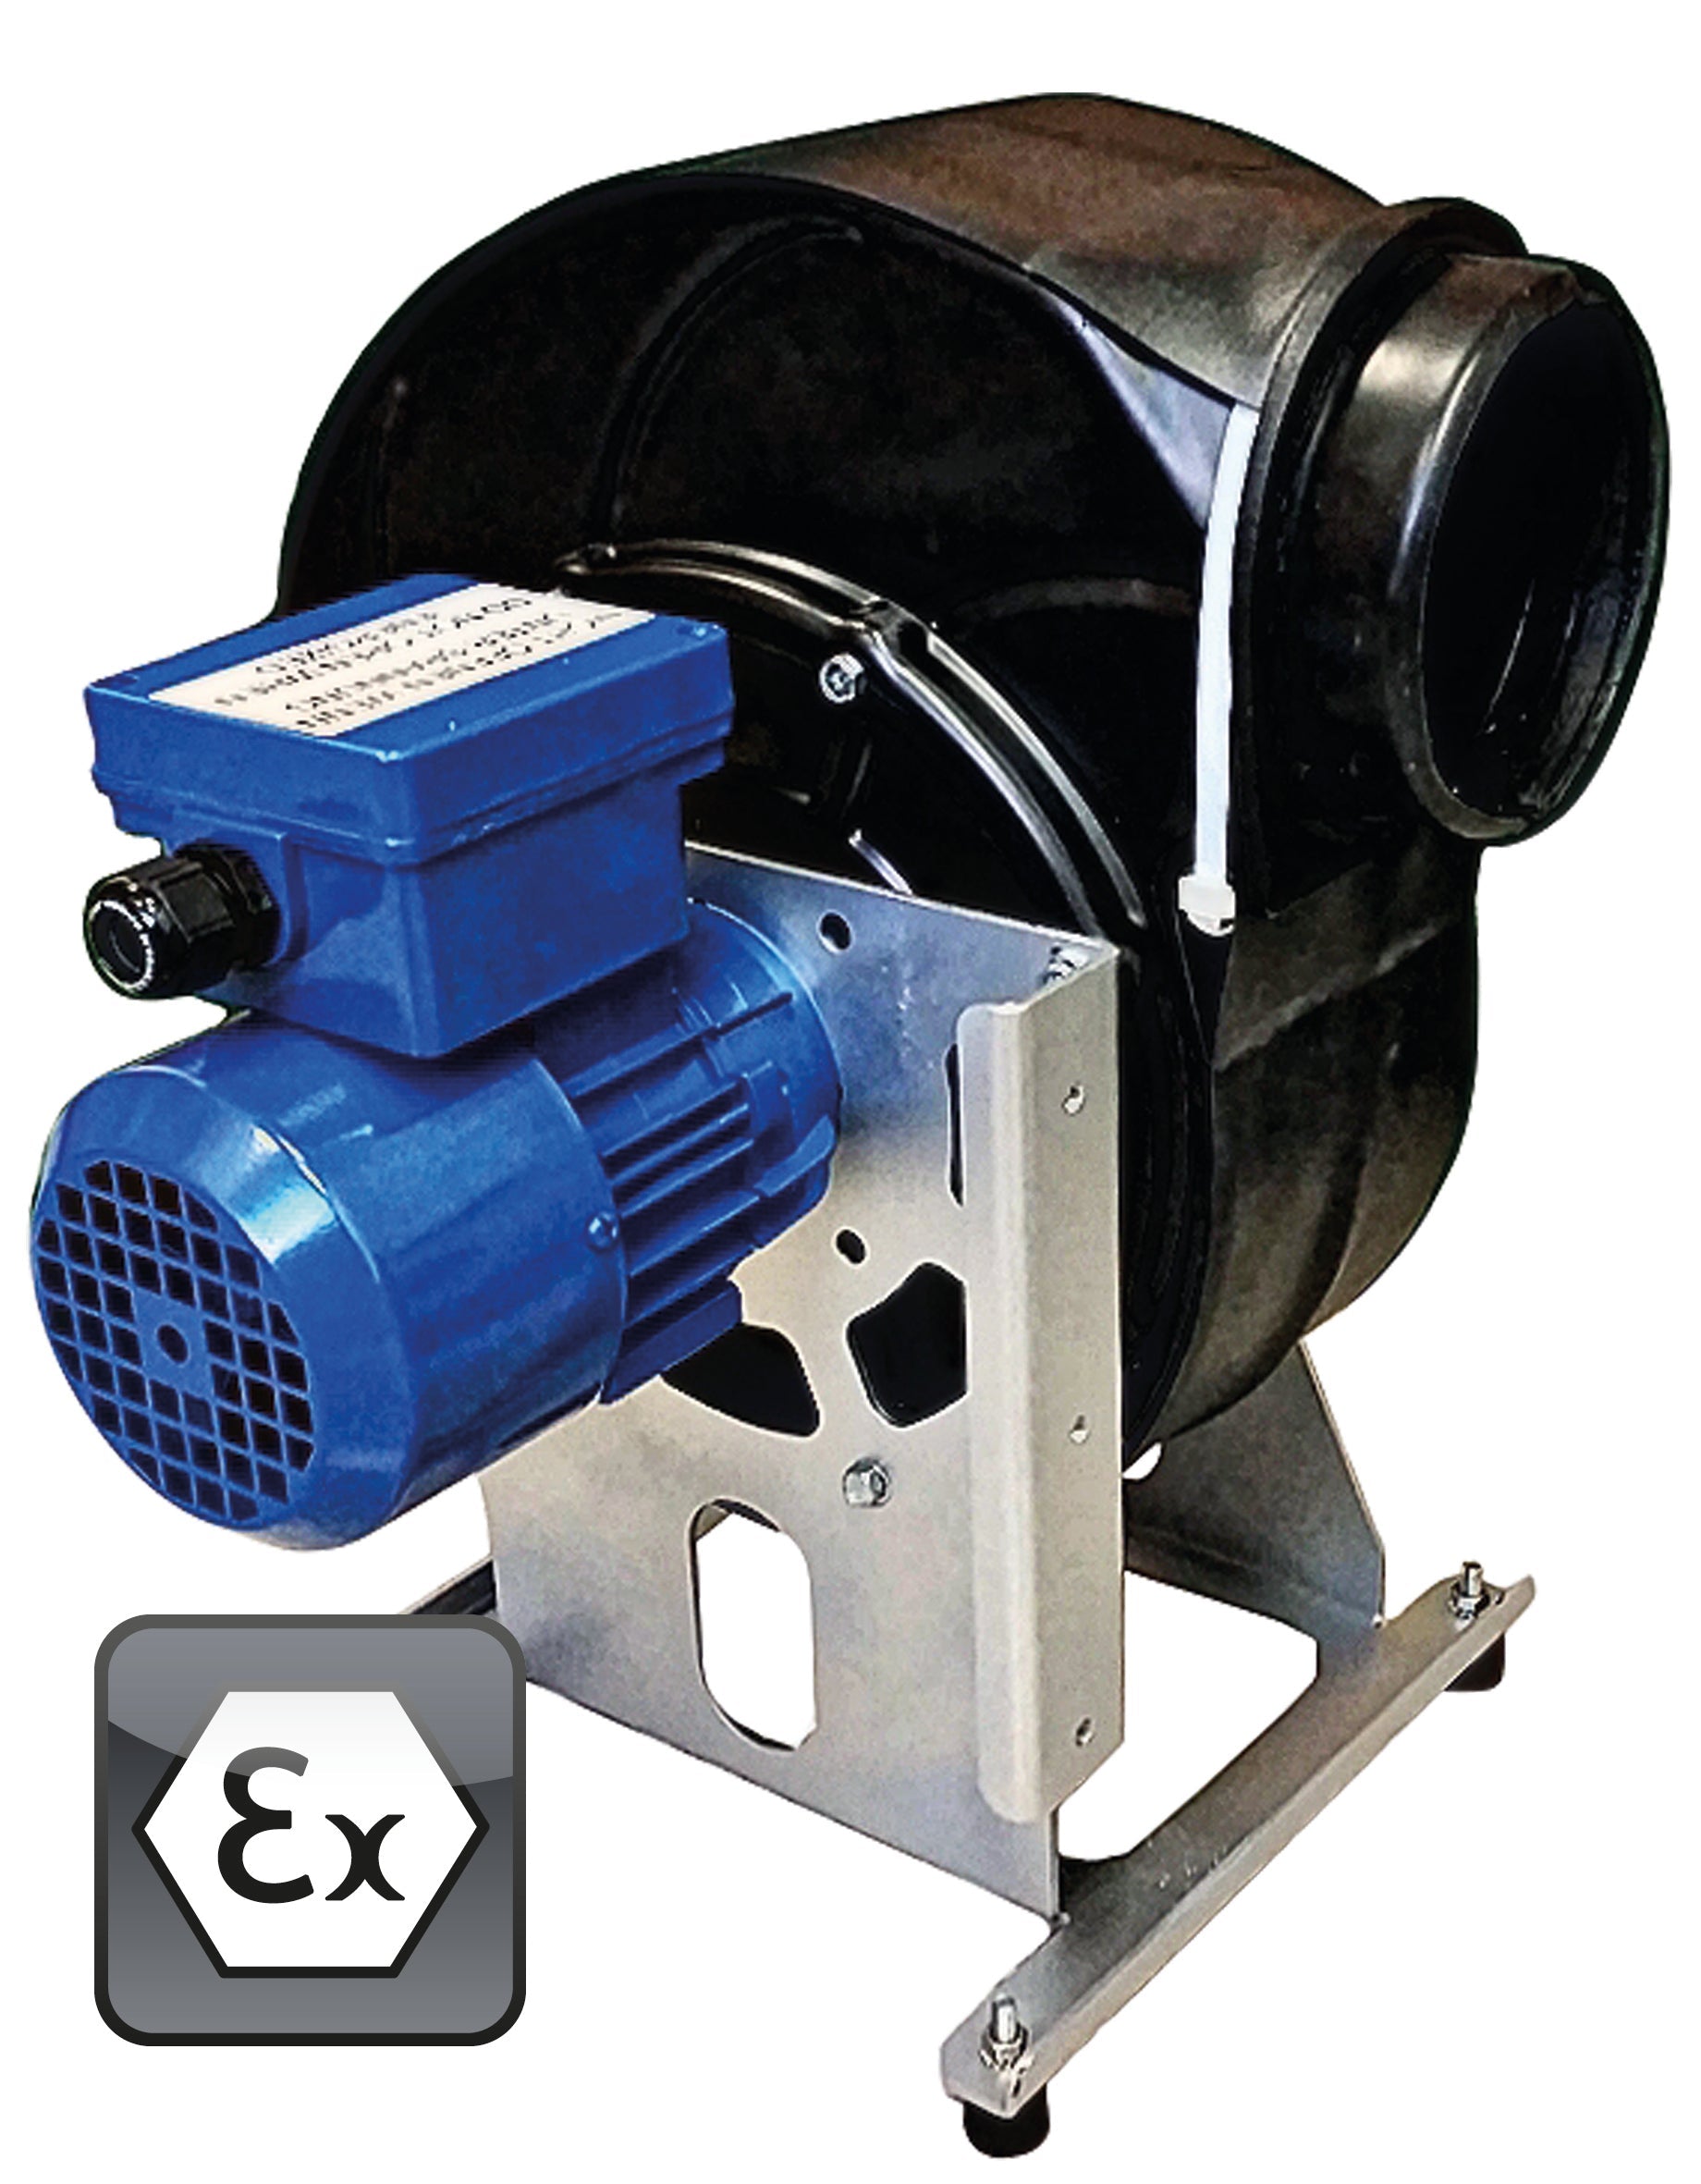 Ventilator Modell EP.VE.29424 für Gefahrstoffarbeitsplätze, Polypropylen